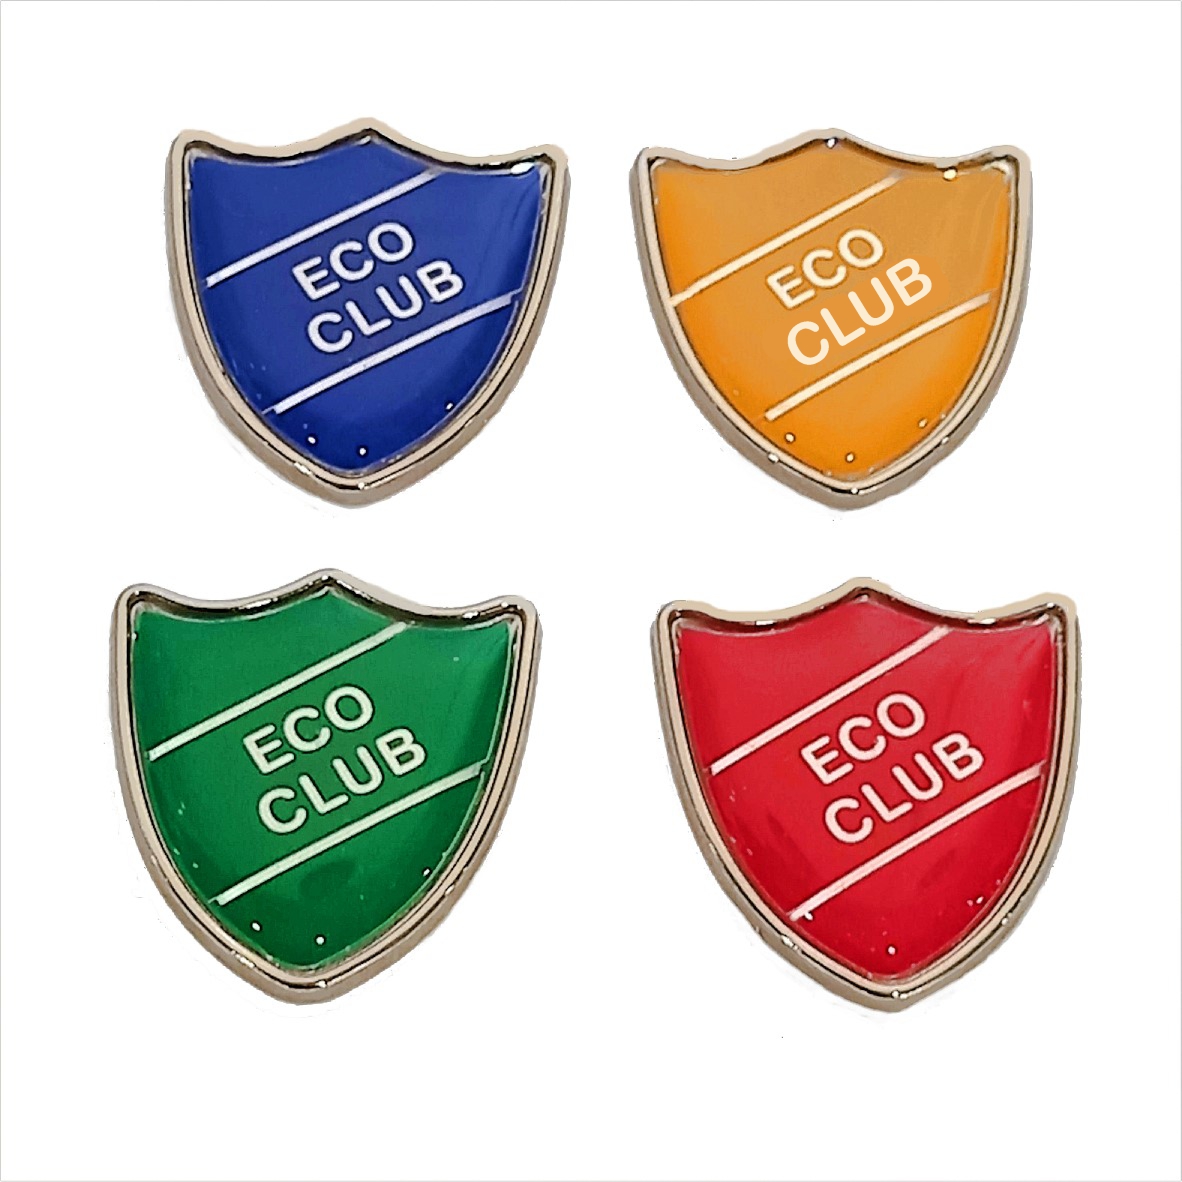 ECO CLUB shield badge